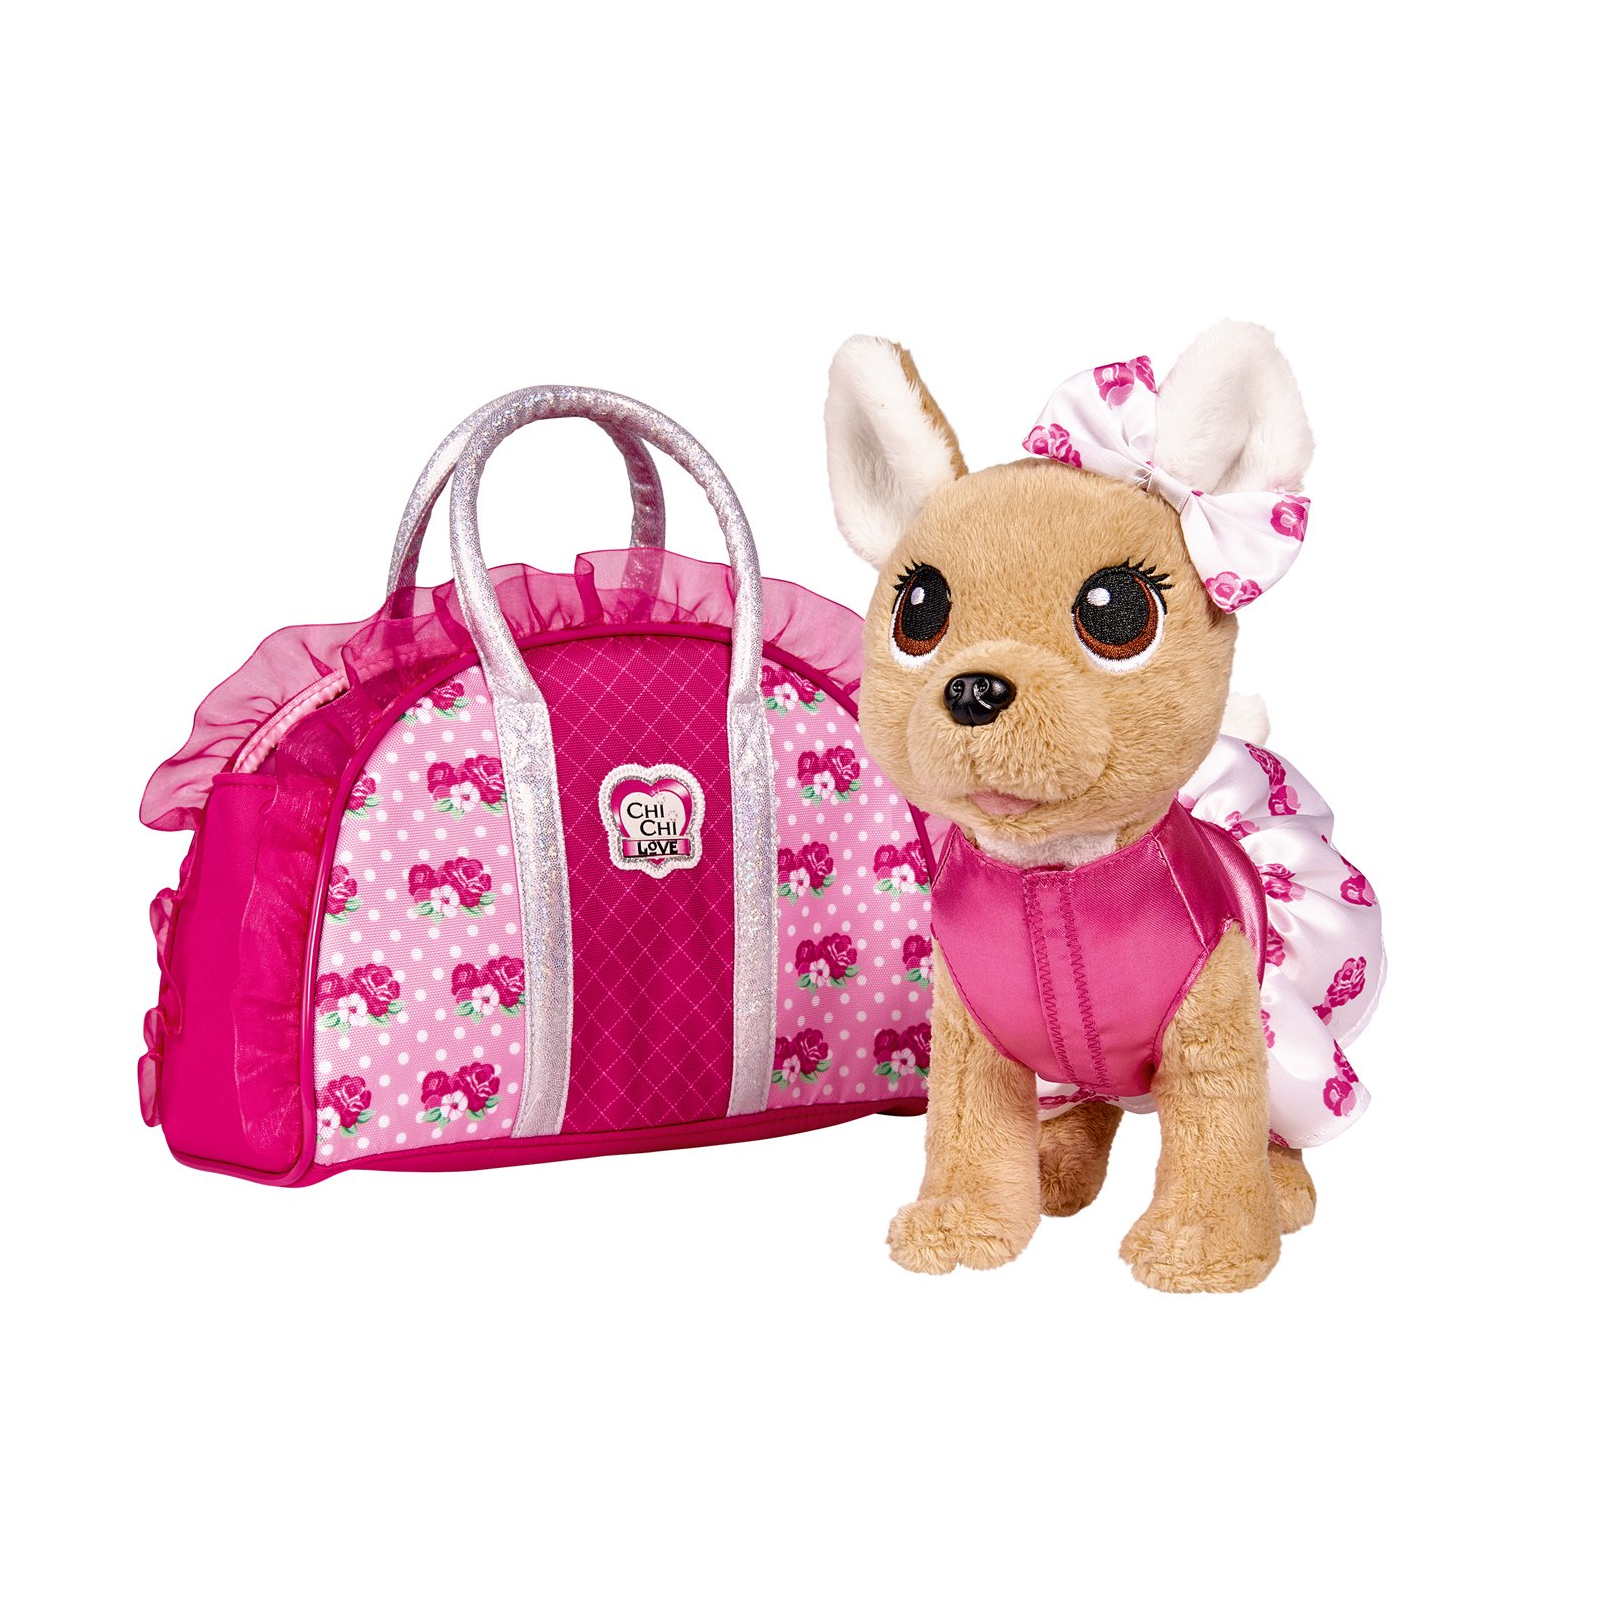 М'яка іграшка Simba Toys Chi Chi Love Чихуахуа Рожева мода із сумочкою (5893346)